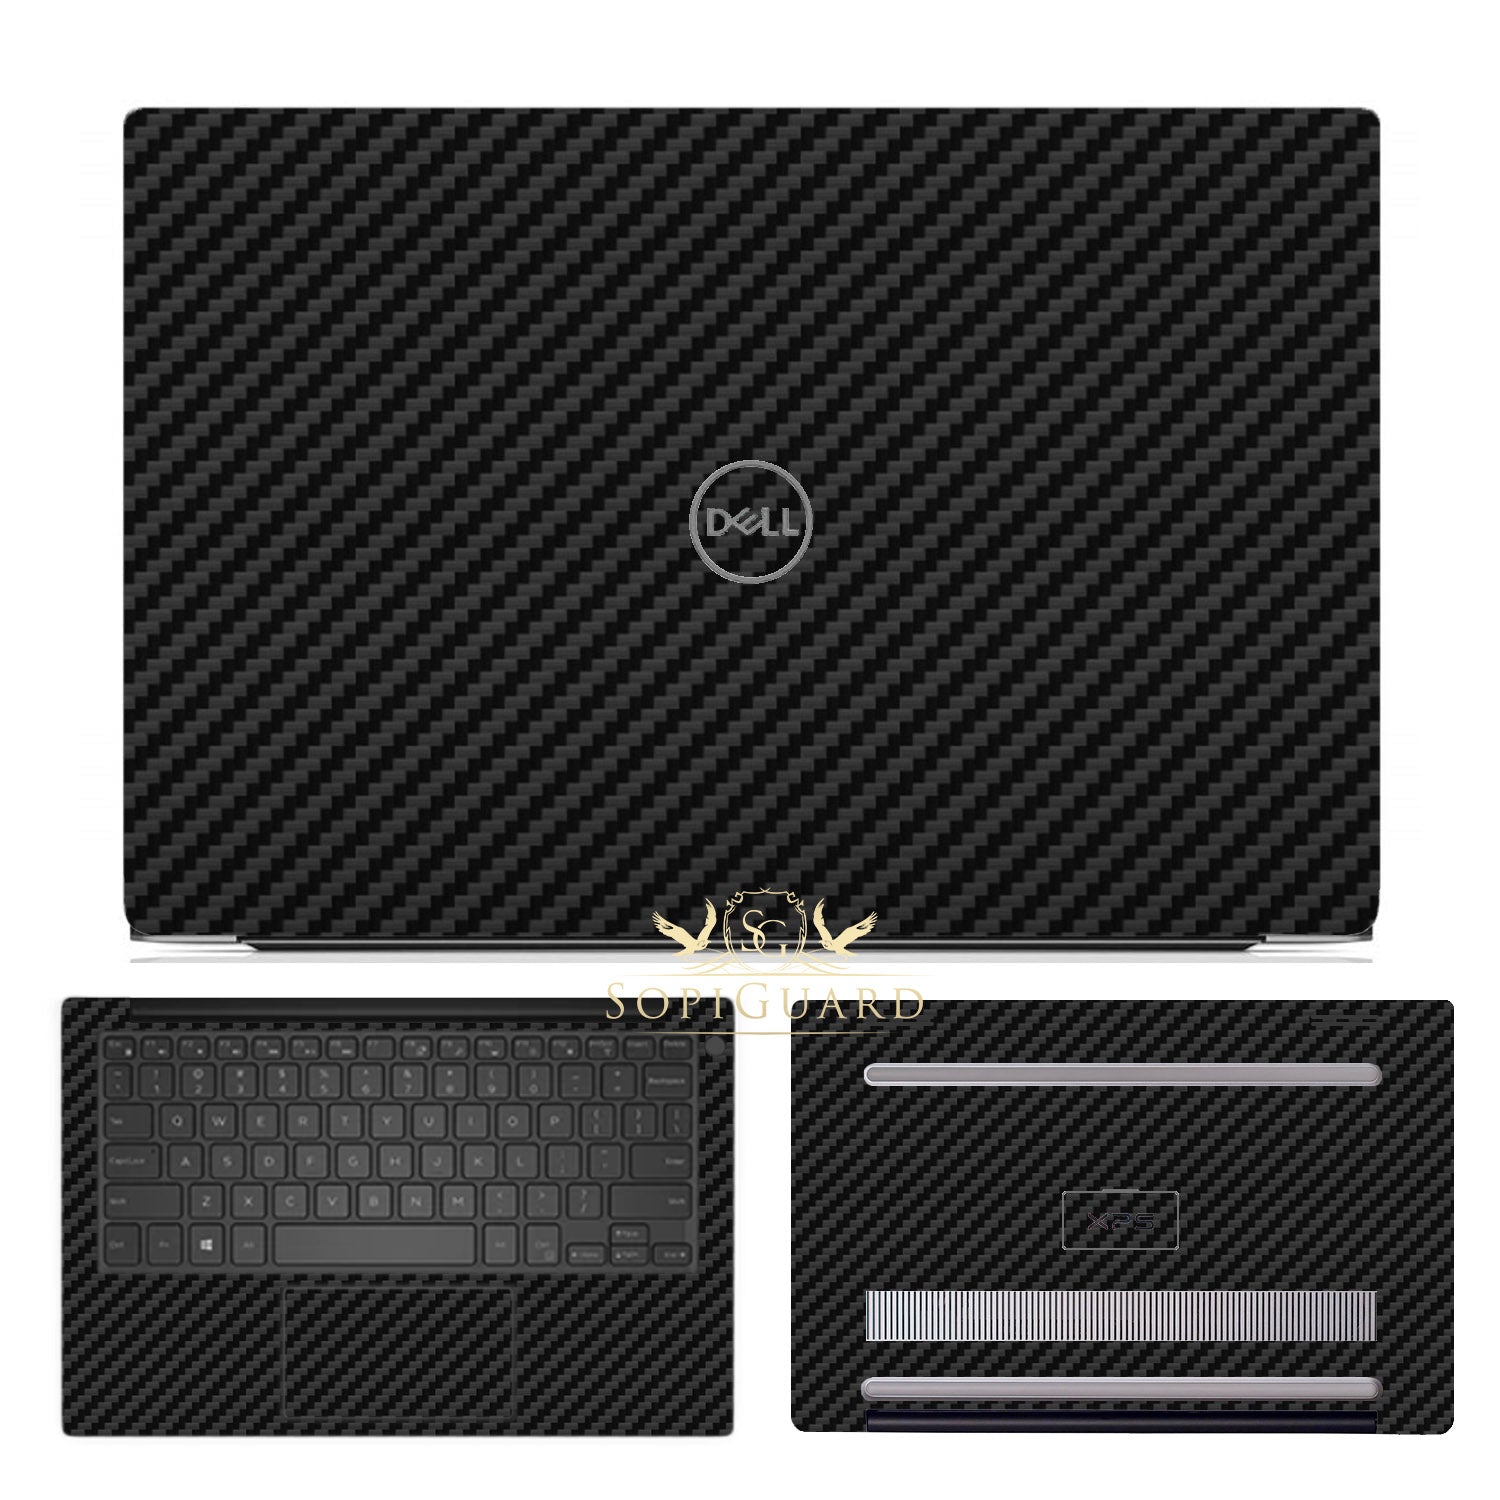 Dell XPS 15 (7590) sticker skin